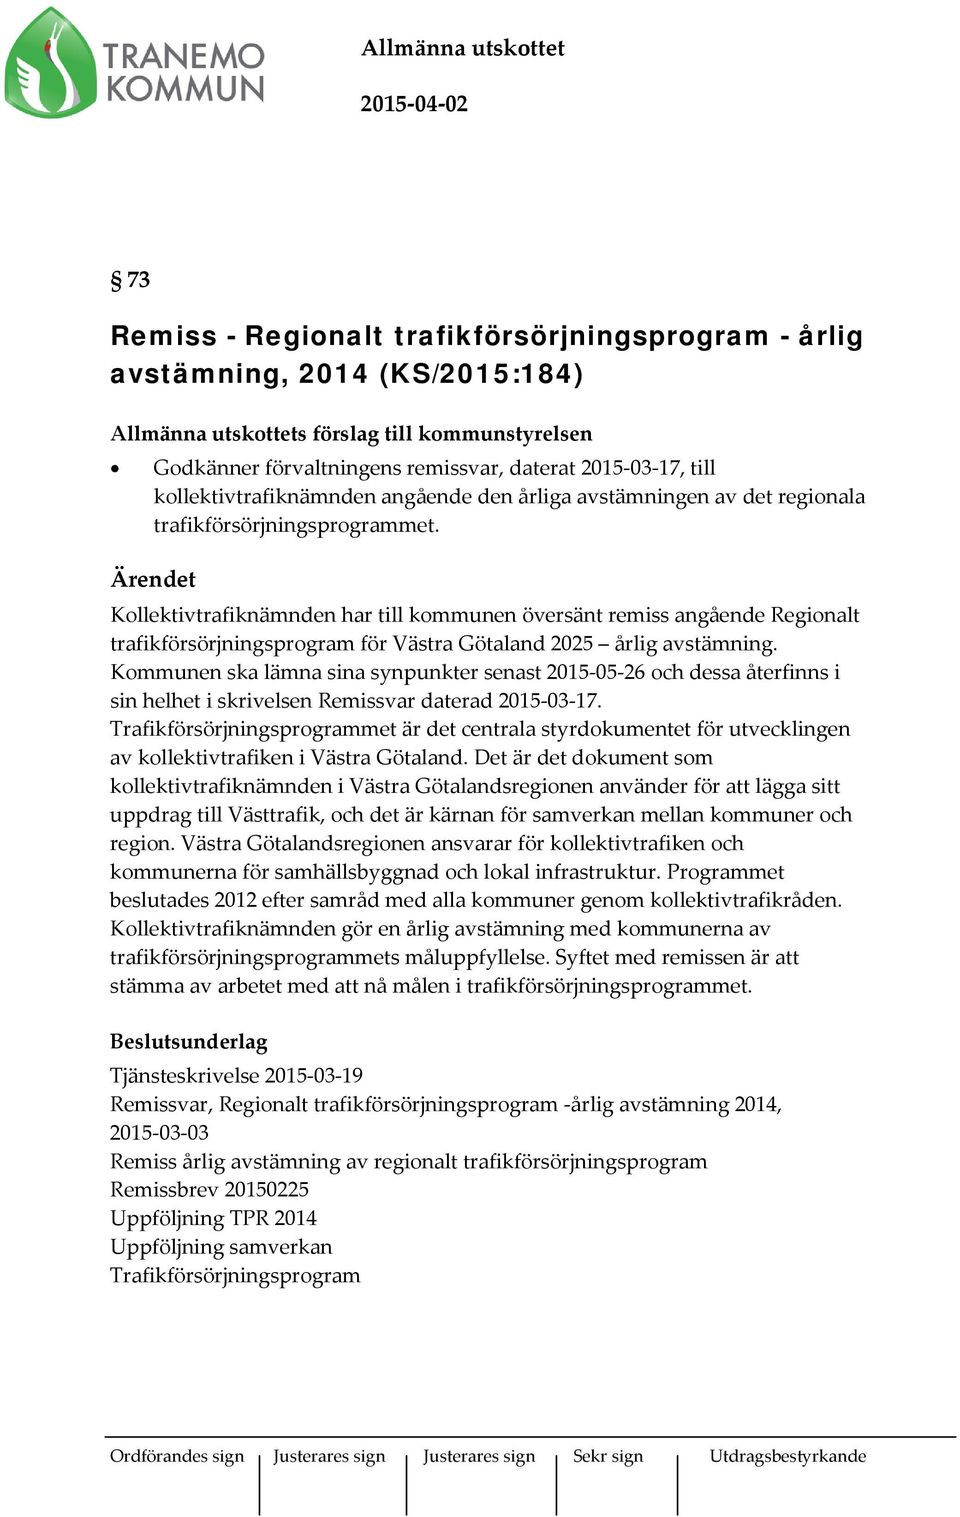 Ärendet Kollektivtrafiknämnden har till kommunen översänt remiss angående Regionalt trafikförsörjningsprogram för Västra Götaland 2025 årlig avstämning.